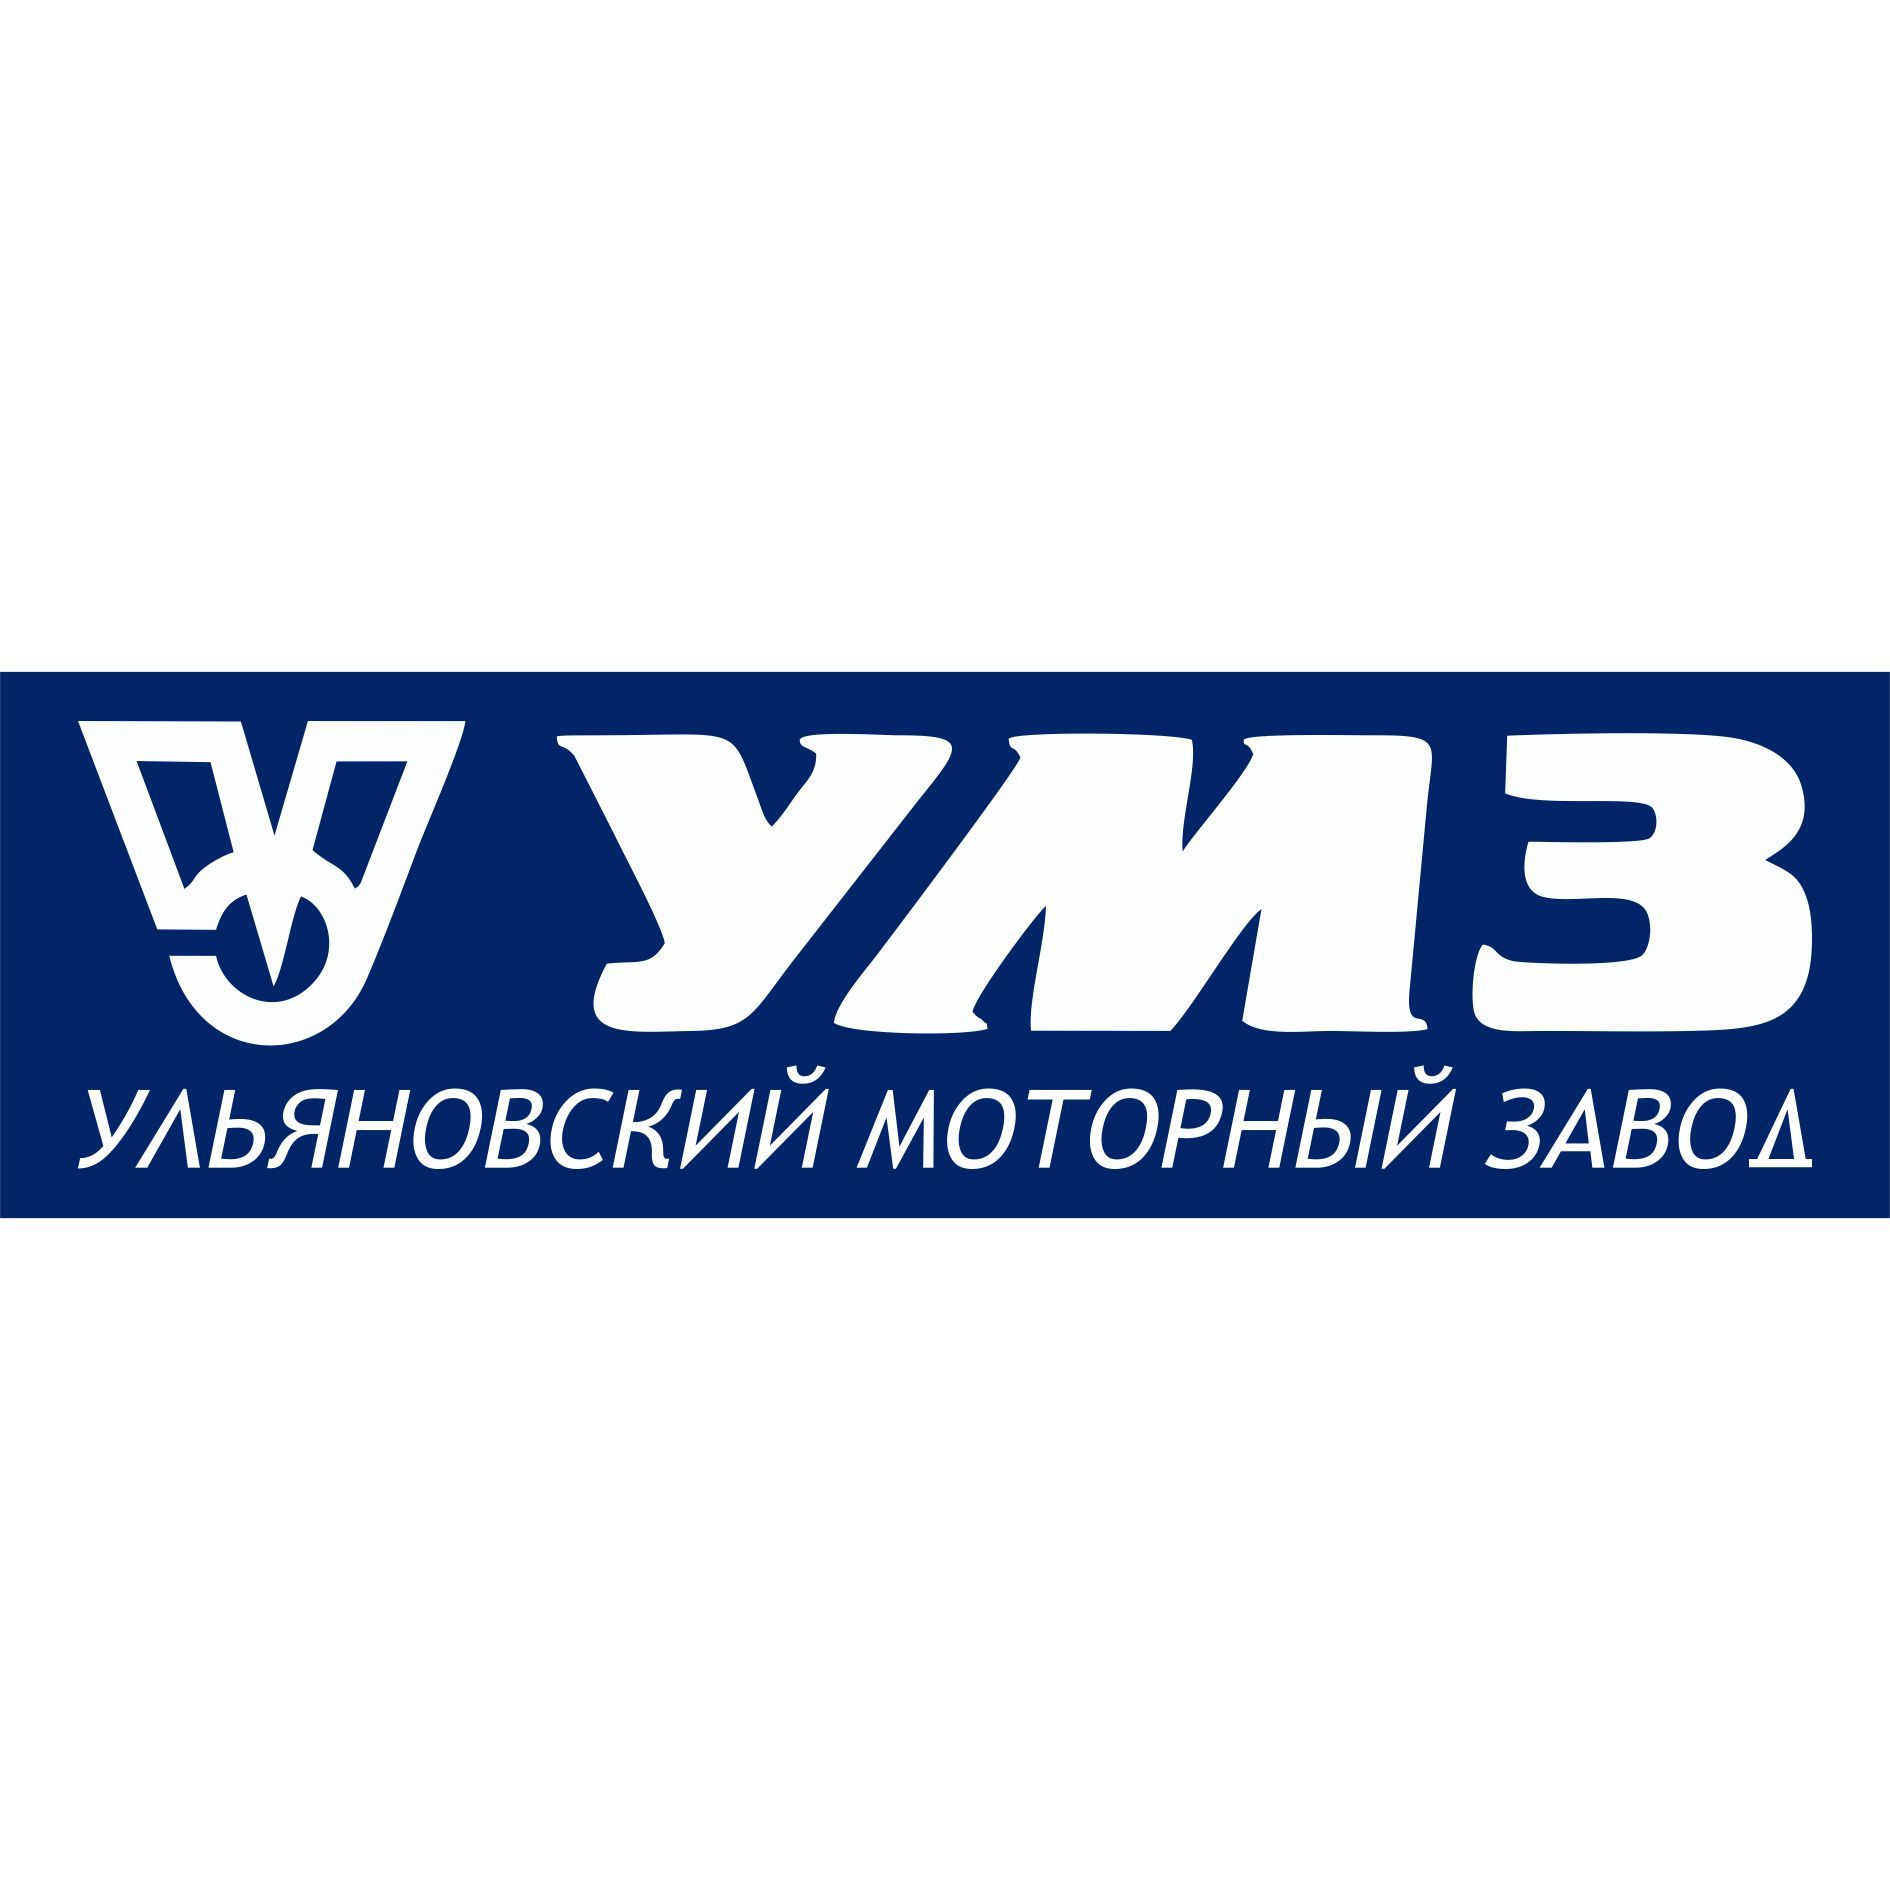 Ульяновский моторный завод